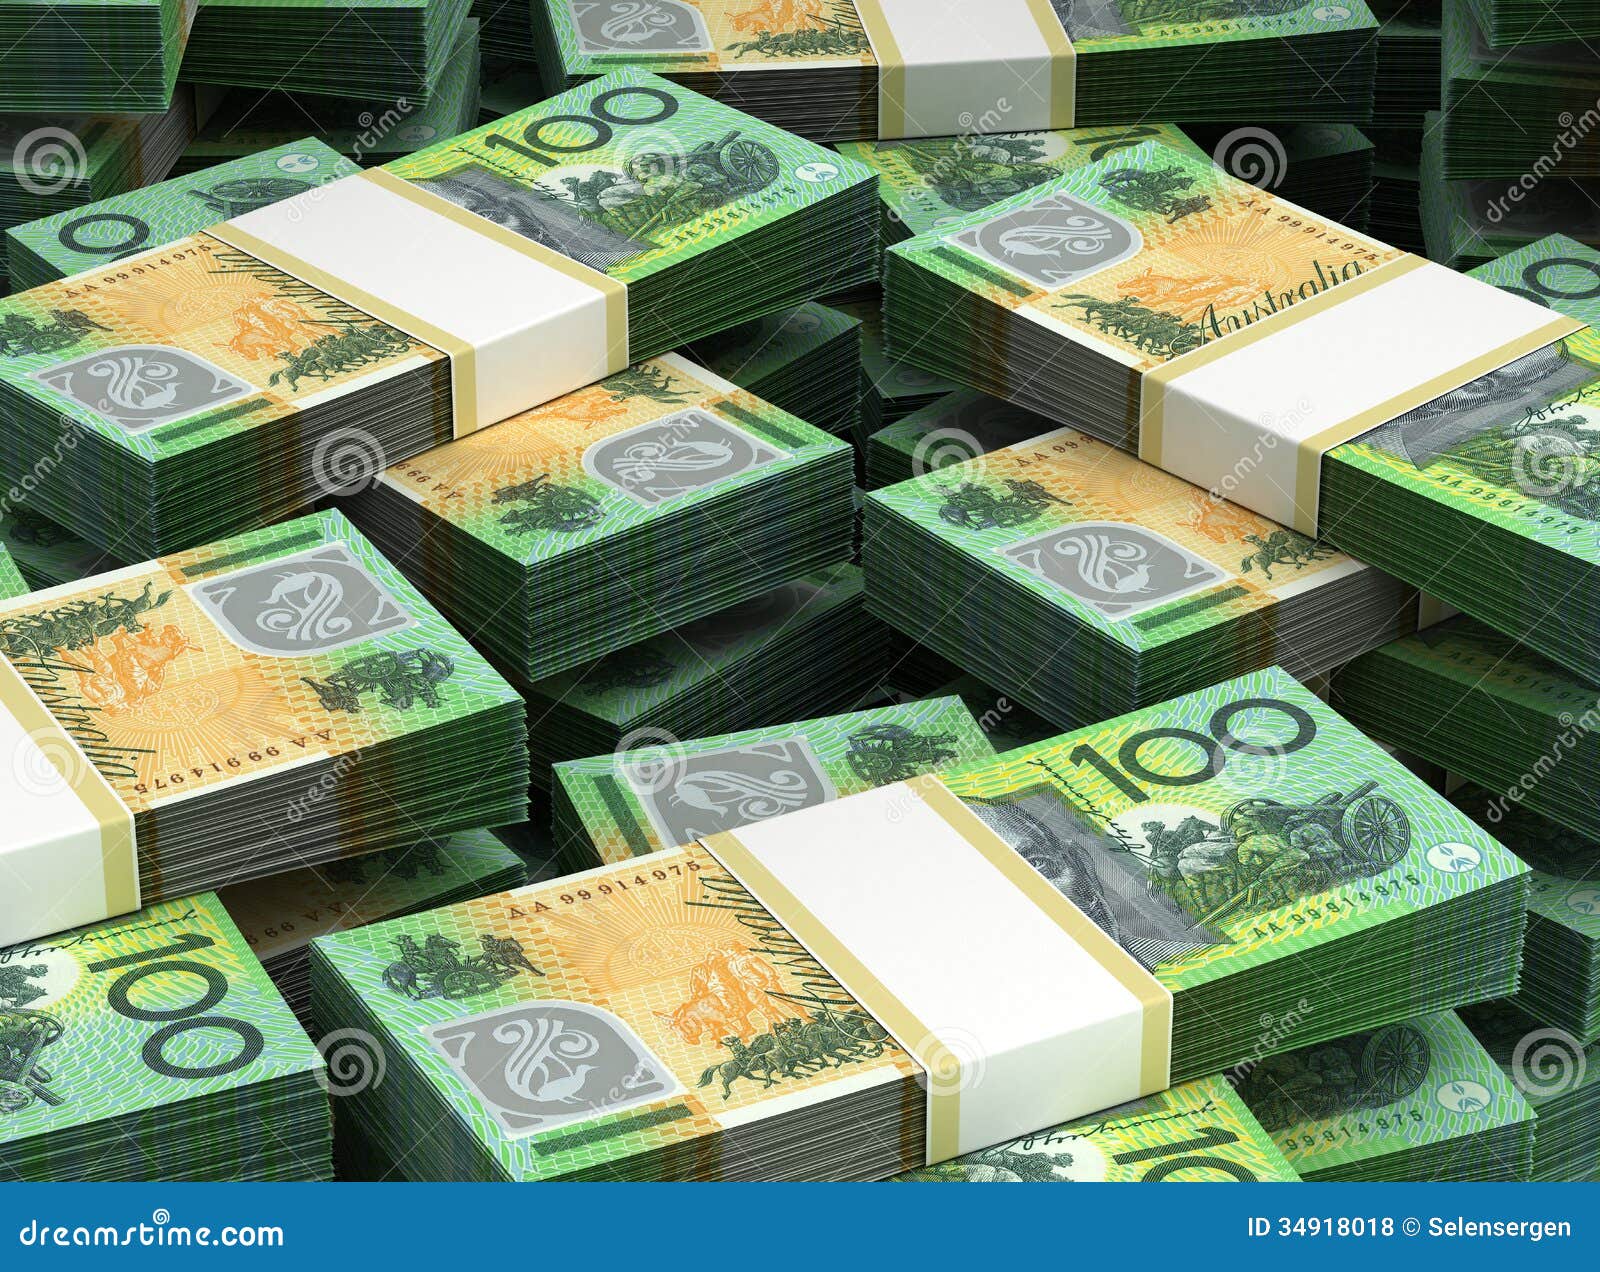 澳大利亚元钞票 库存图片. 图片 包括有 横幅提供资金的, 澳大利亚, 银行, 货币, 塑料, 衡量单位 - 128797759